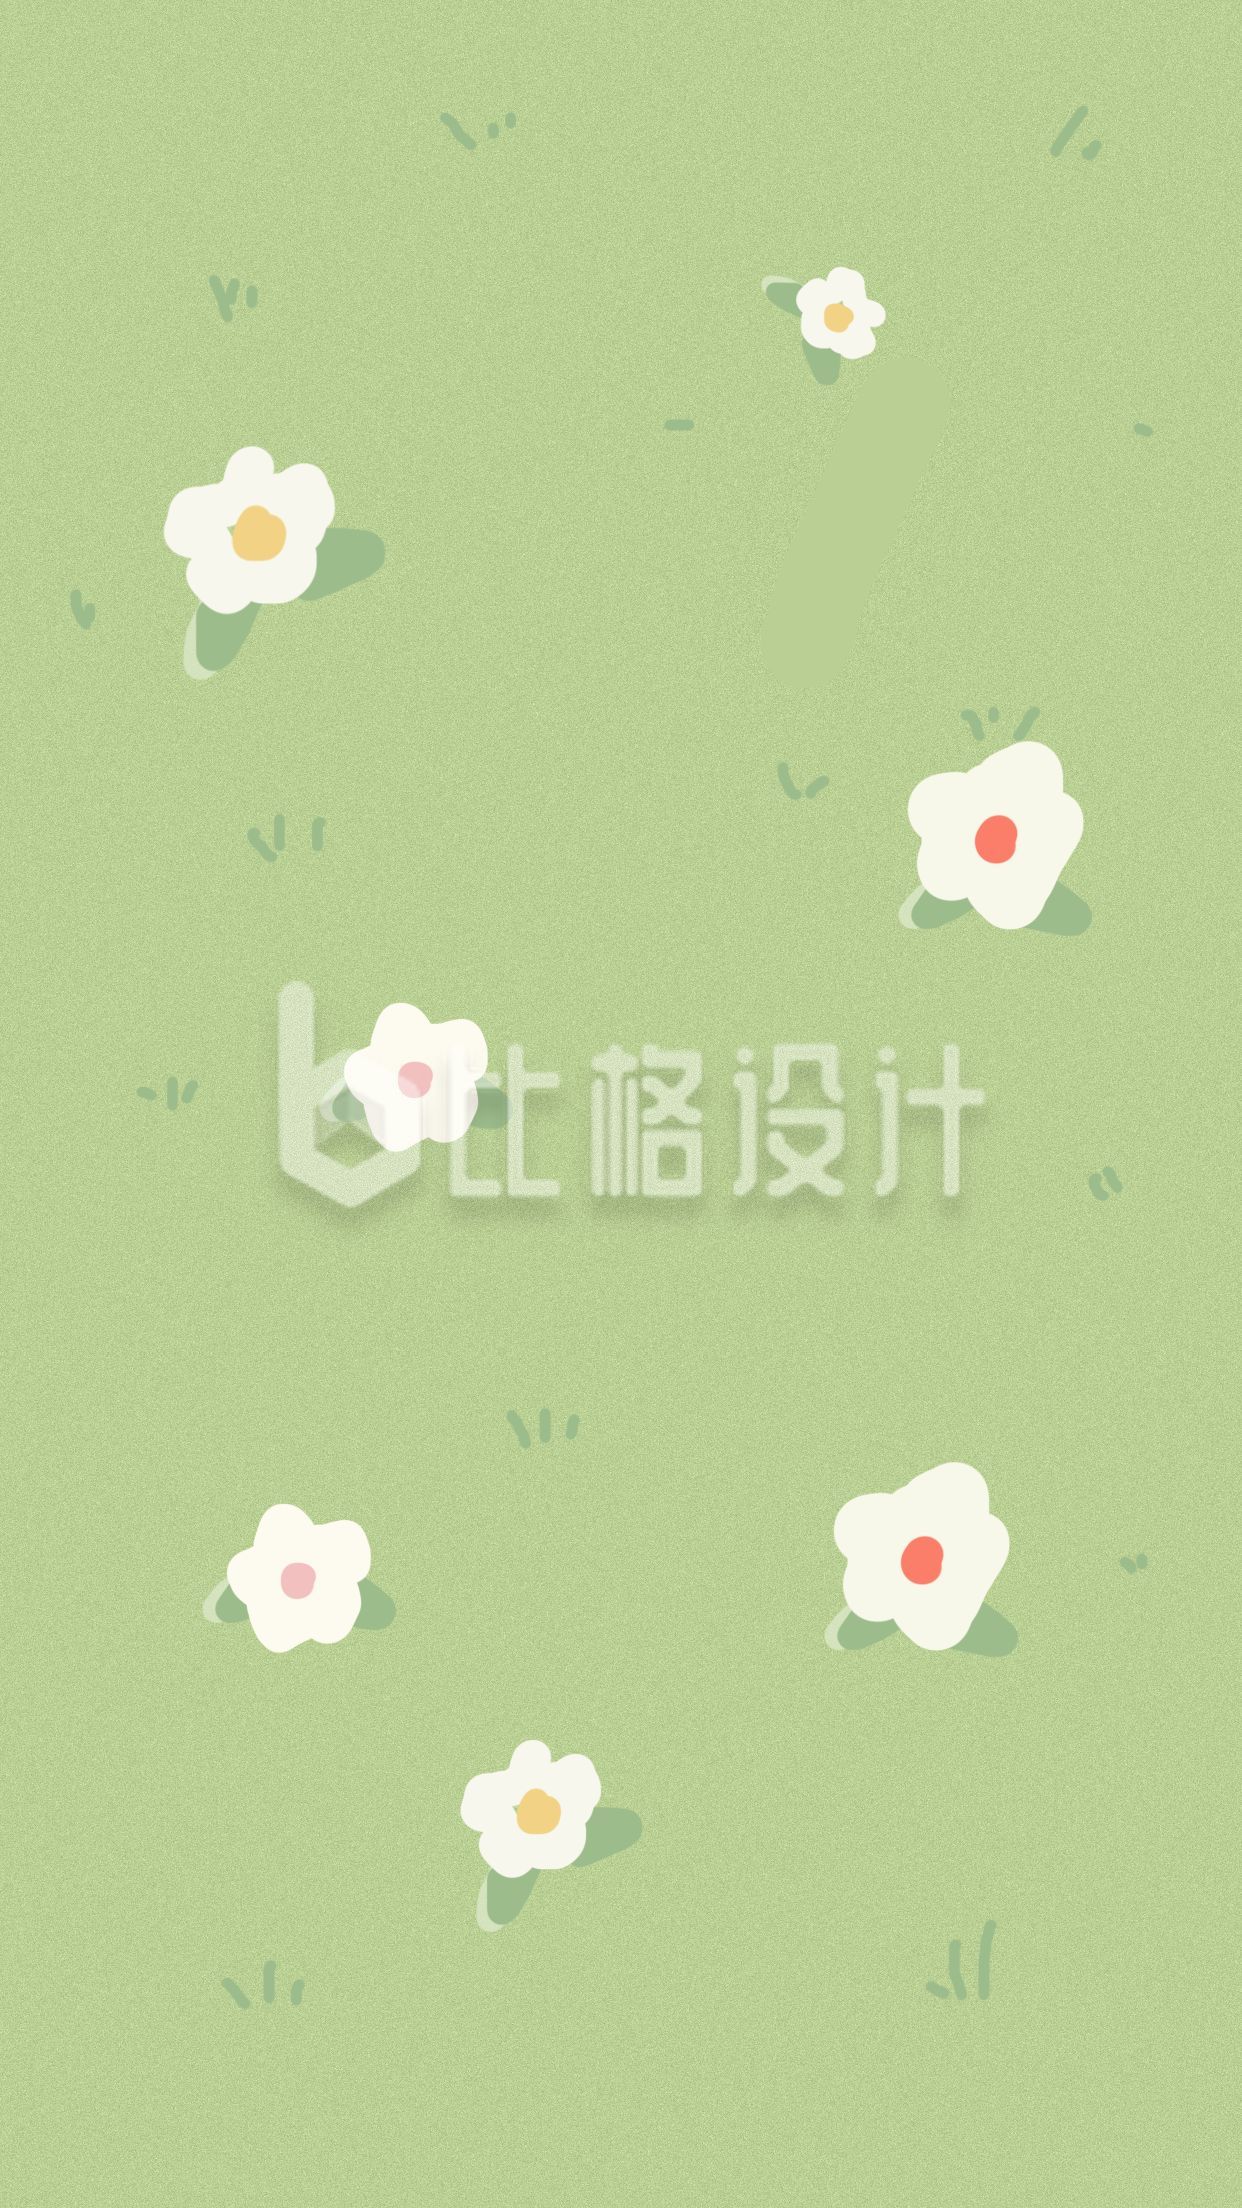 简约小清新绿色背景白色小花朵手机壁纸